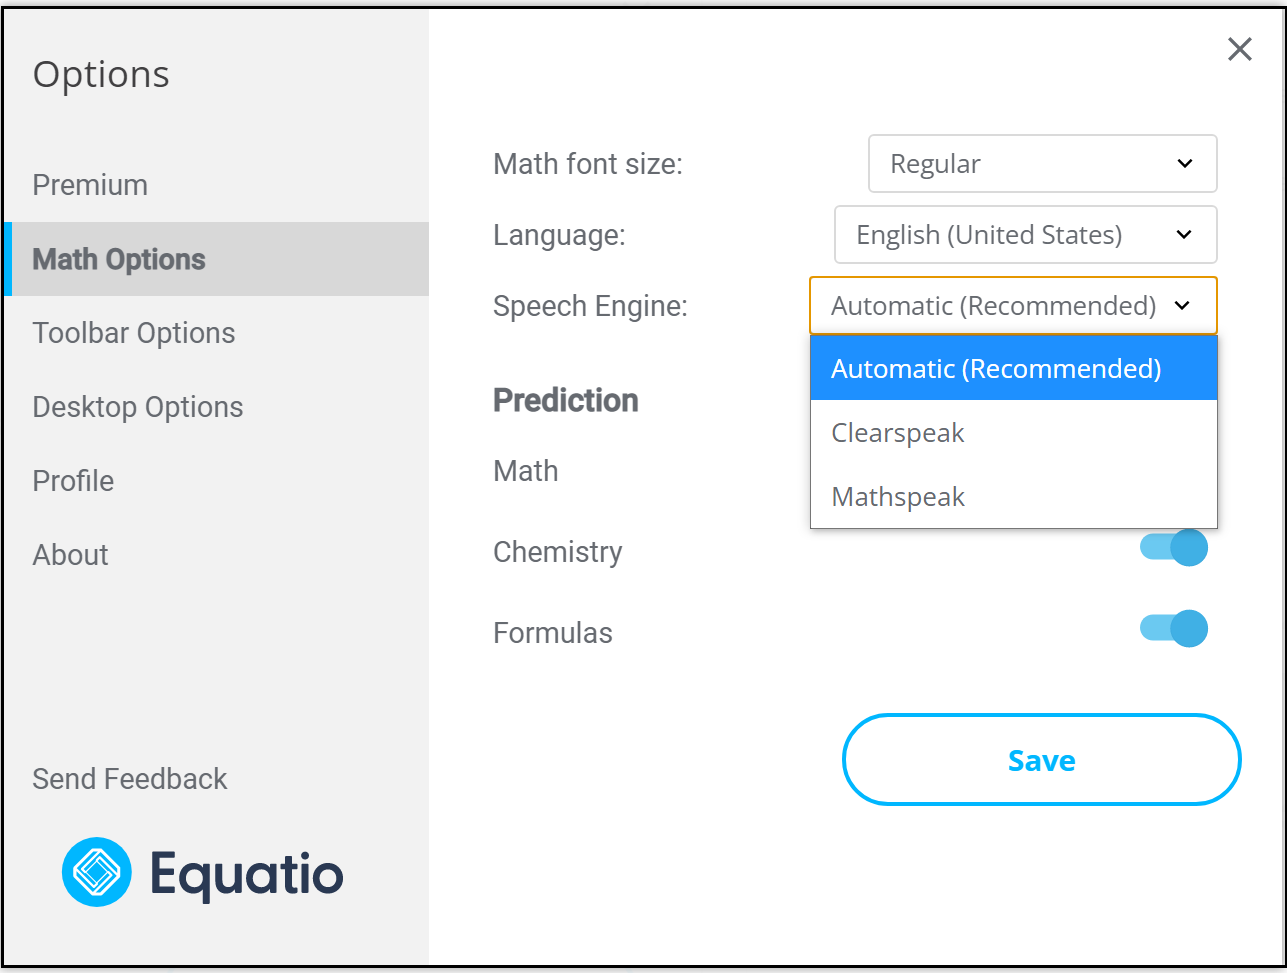 Speech Engine Options for Equatio